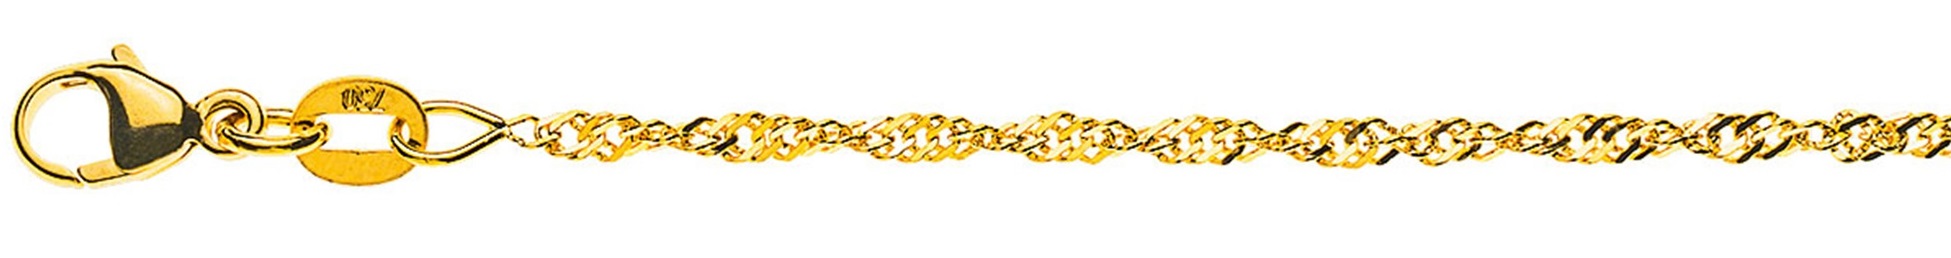 AURONOS Prestige Necklace Yellow Gold 18K Singapore Chain 45cm 1.9mm